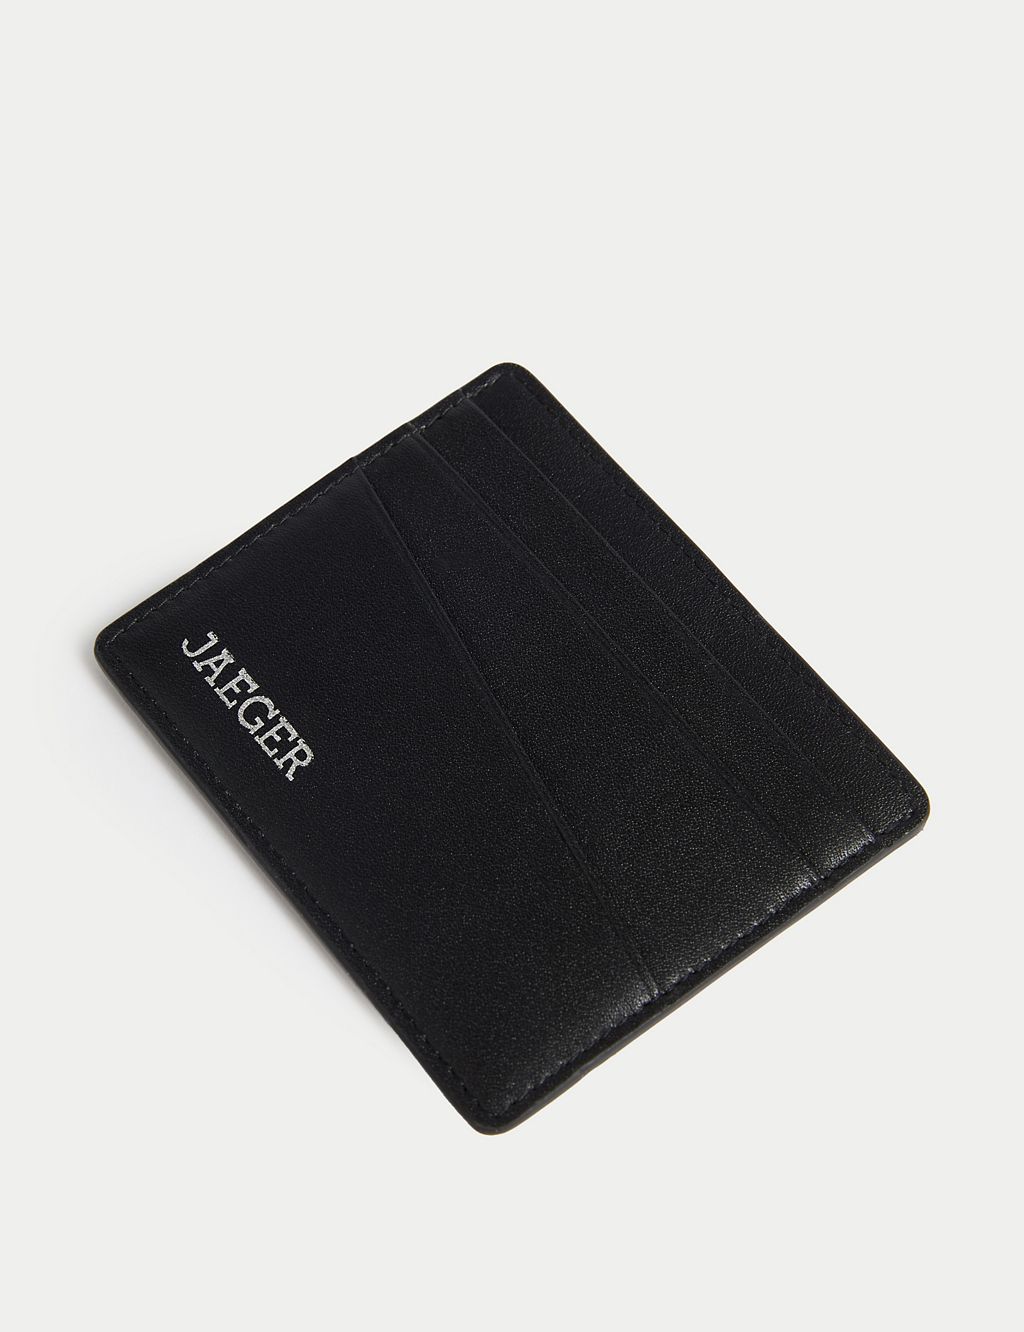 Leather Cardsafe™ Card Holder 2 of 3